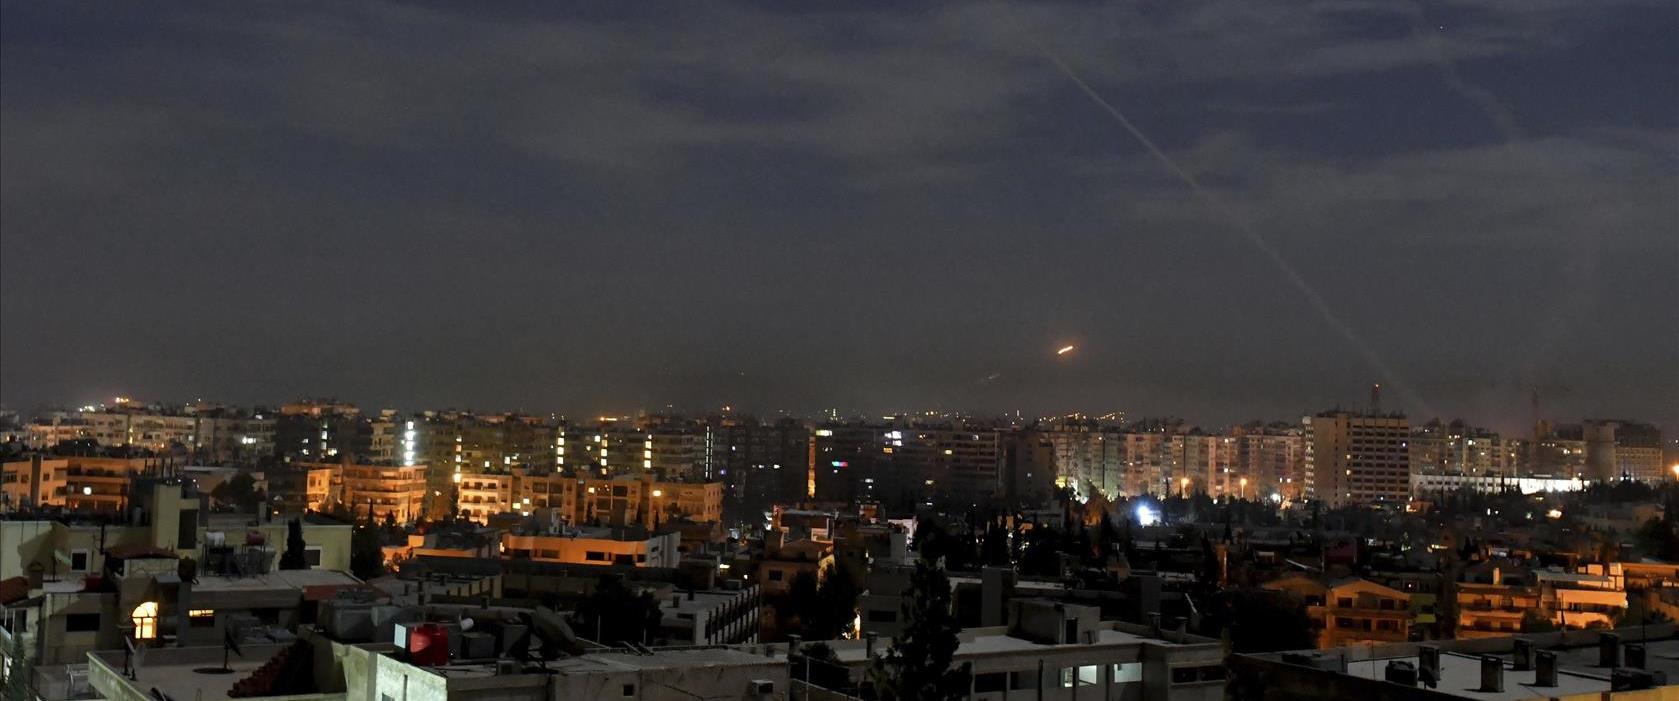 התקיפה שיוחסה לישראל בסוריה, הלילה